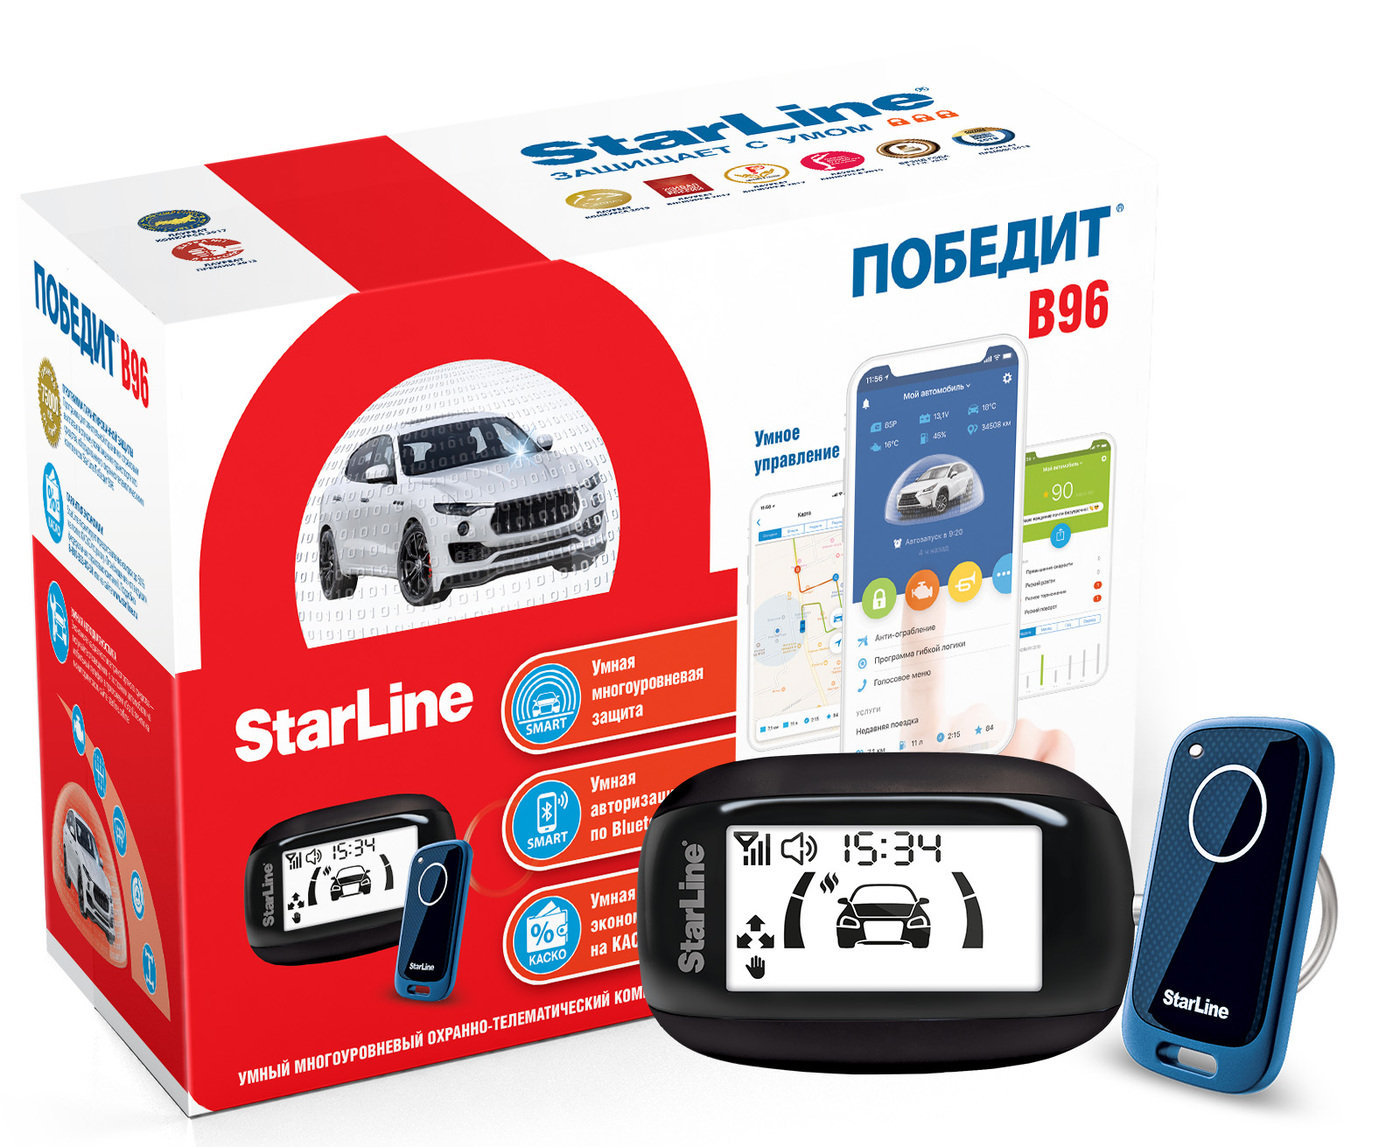 Старлайн модели с автозапуском. Автосигнализация STARLINE s96 GSM-GPS. Старлайн победит s96. Старлайн b96. STARLINE b96 GPS+ГЛОНАСС.